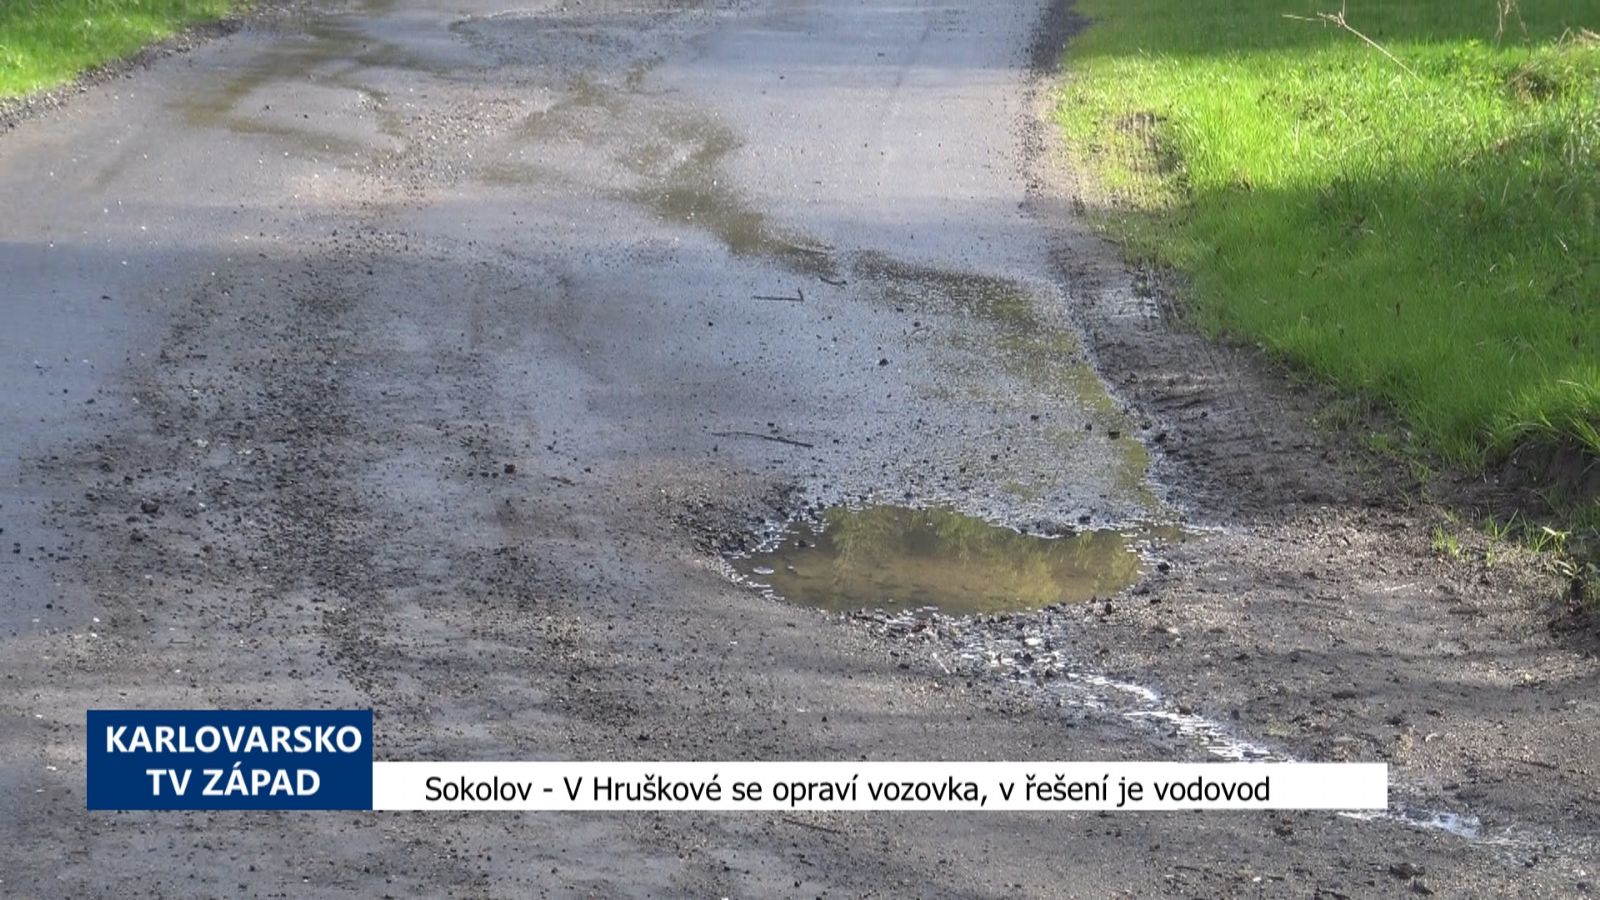 Sokolov: Hrušková má opravenou vozovku, v řešení je vodovod (TV Západ)